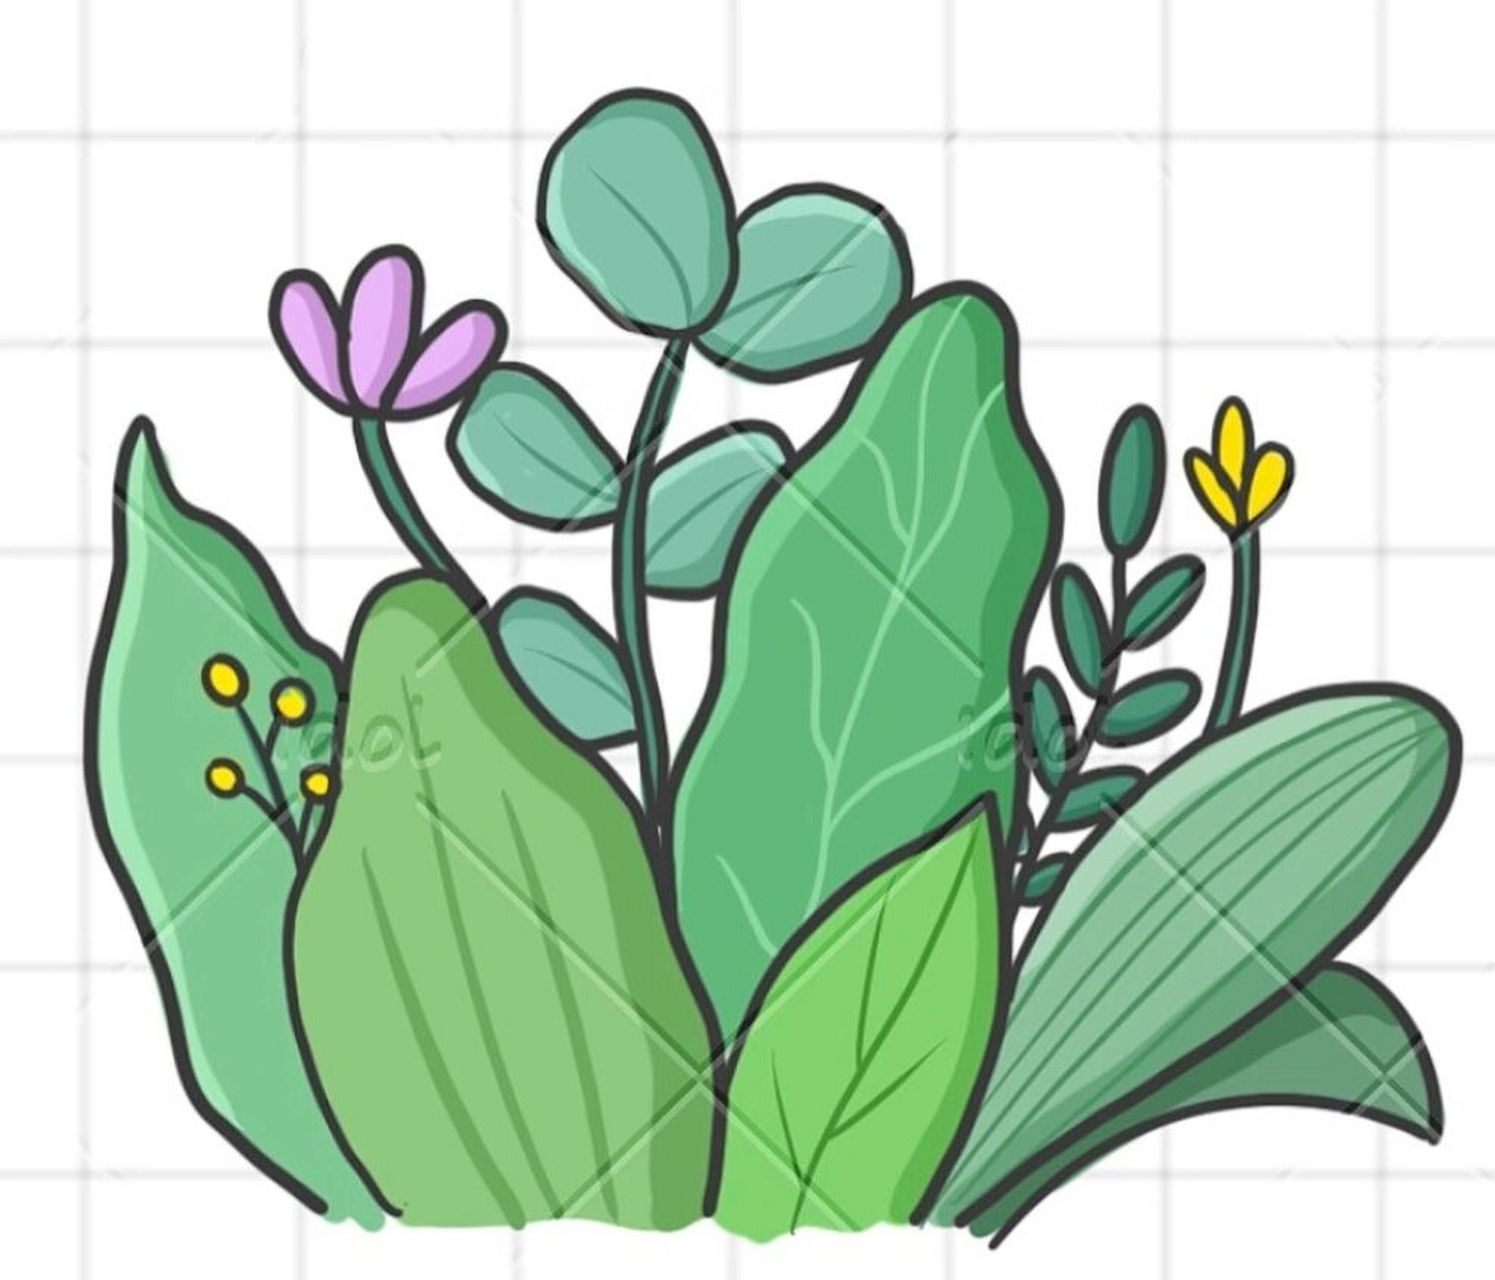 绿色植物简笔画 简易图片